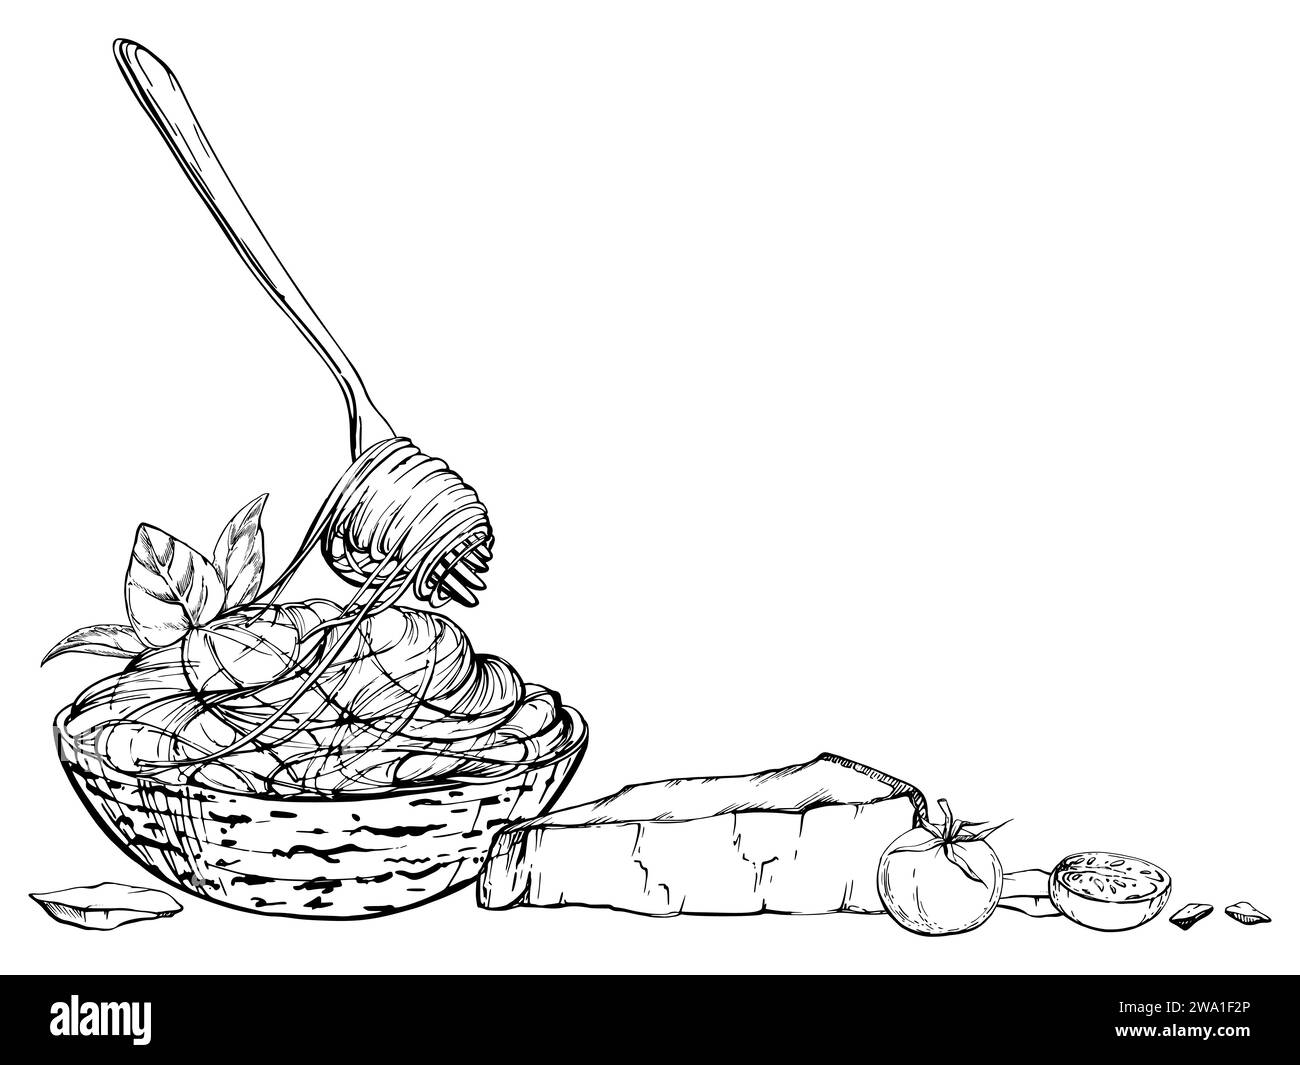 Illustrazione a inchiostro vettoriale disegnata a mano. Piatto di pasta della cucina italiana, ciotola di spaghetti, formaggio parmigiano, pomodoro erbe aromatiche. Composizione isolata su bianco Illustrazione Vettoriale